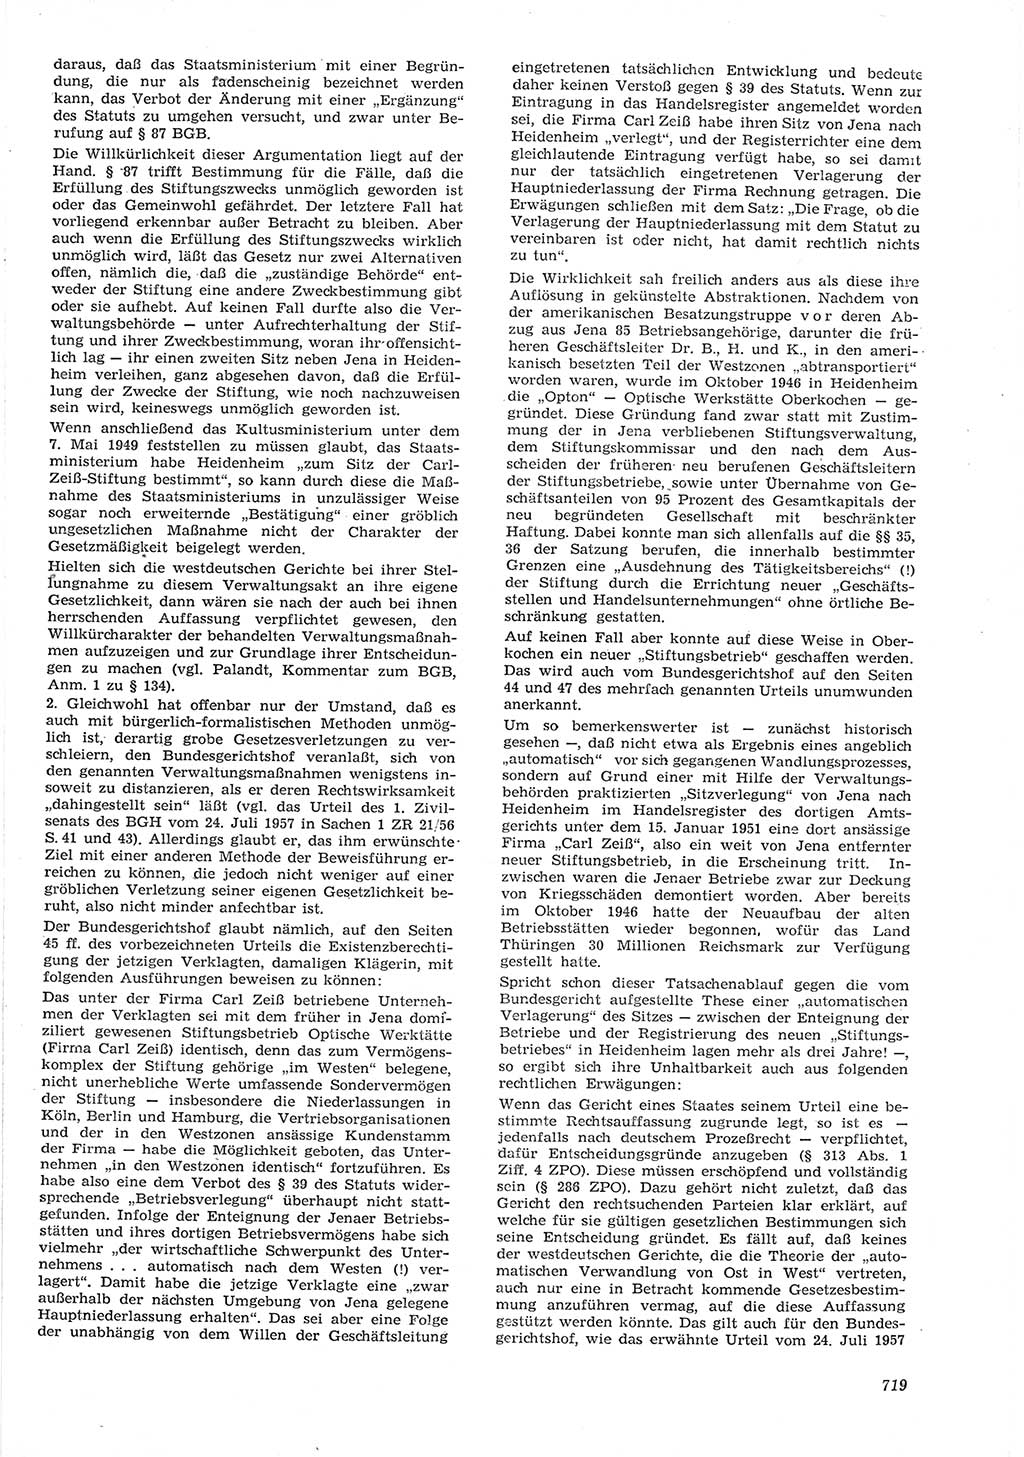 Neue Justiz (NJ), Zeitschrift für Recht und Rechtswissenschaft [Deutsche Demokratische Republik (DDR)], 15. Jahrgang 1961, Seite 719 (NJ DDR 1961, S. 719)